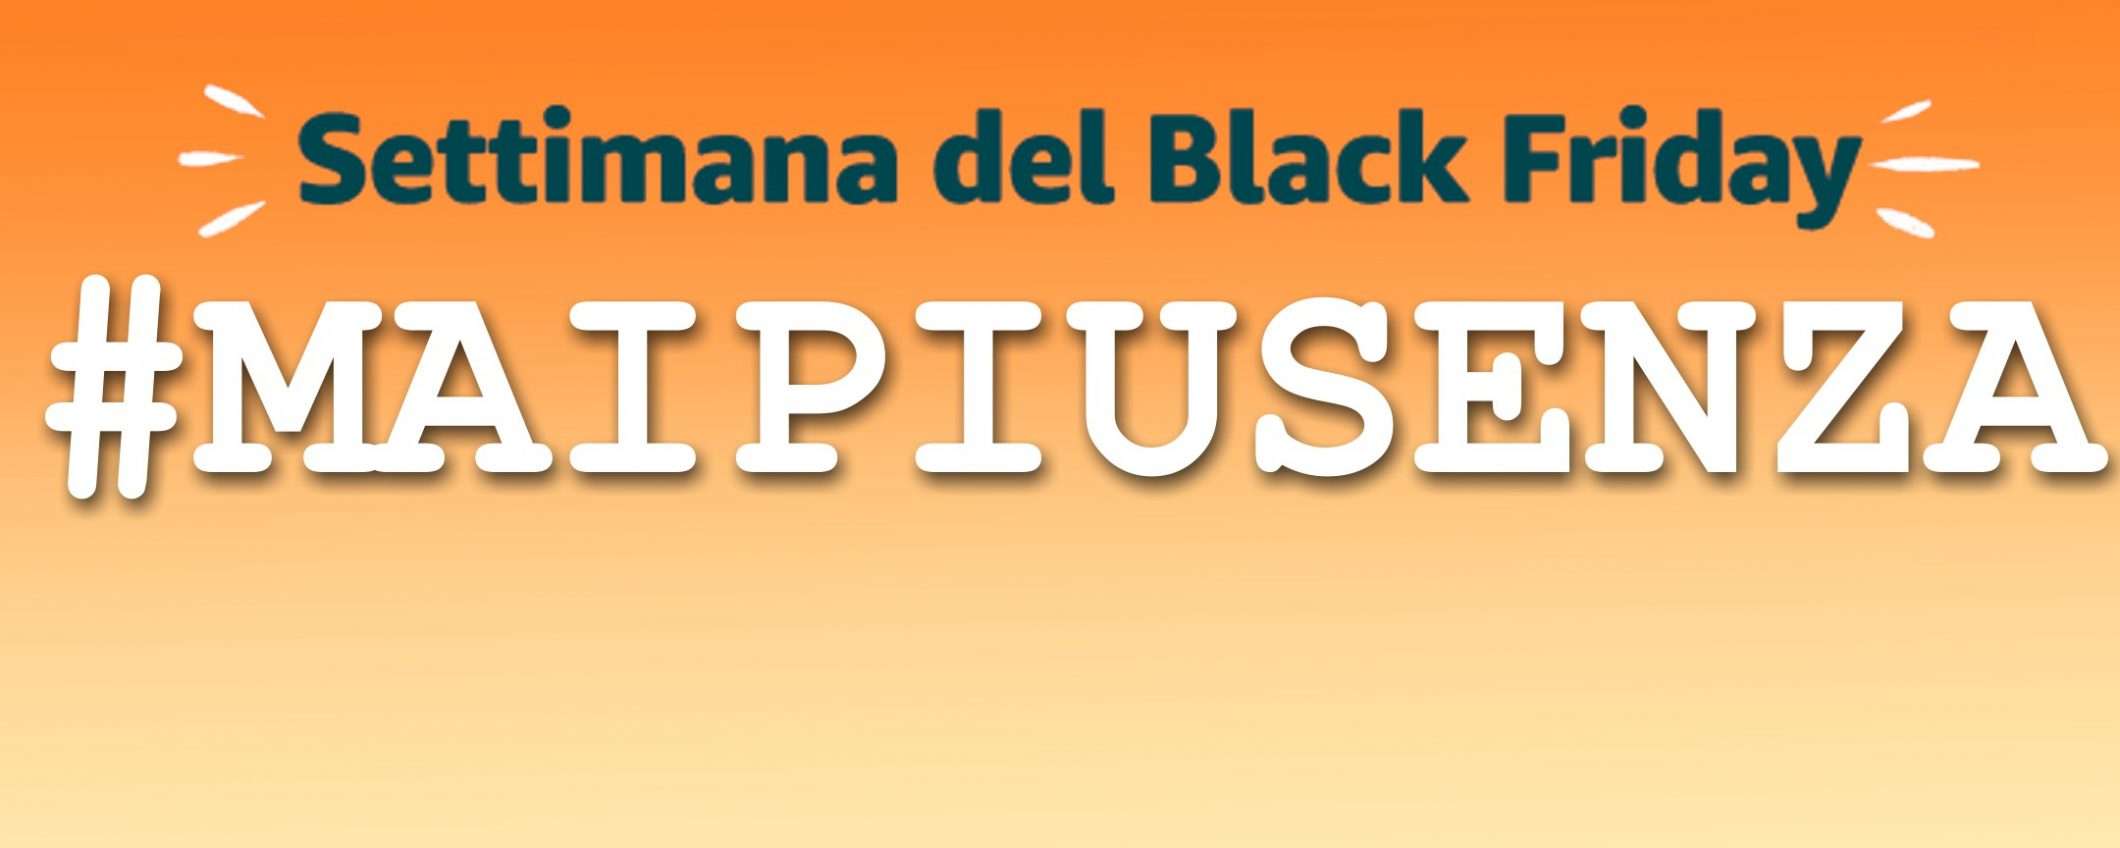 #maipiusenza, altri imperdibili del Black Friday